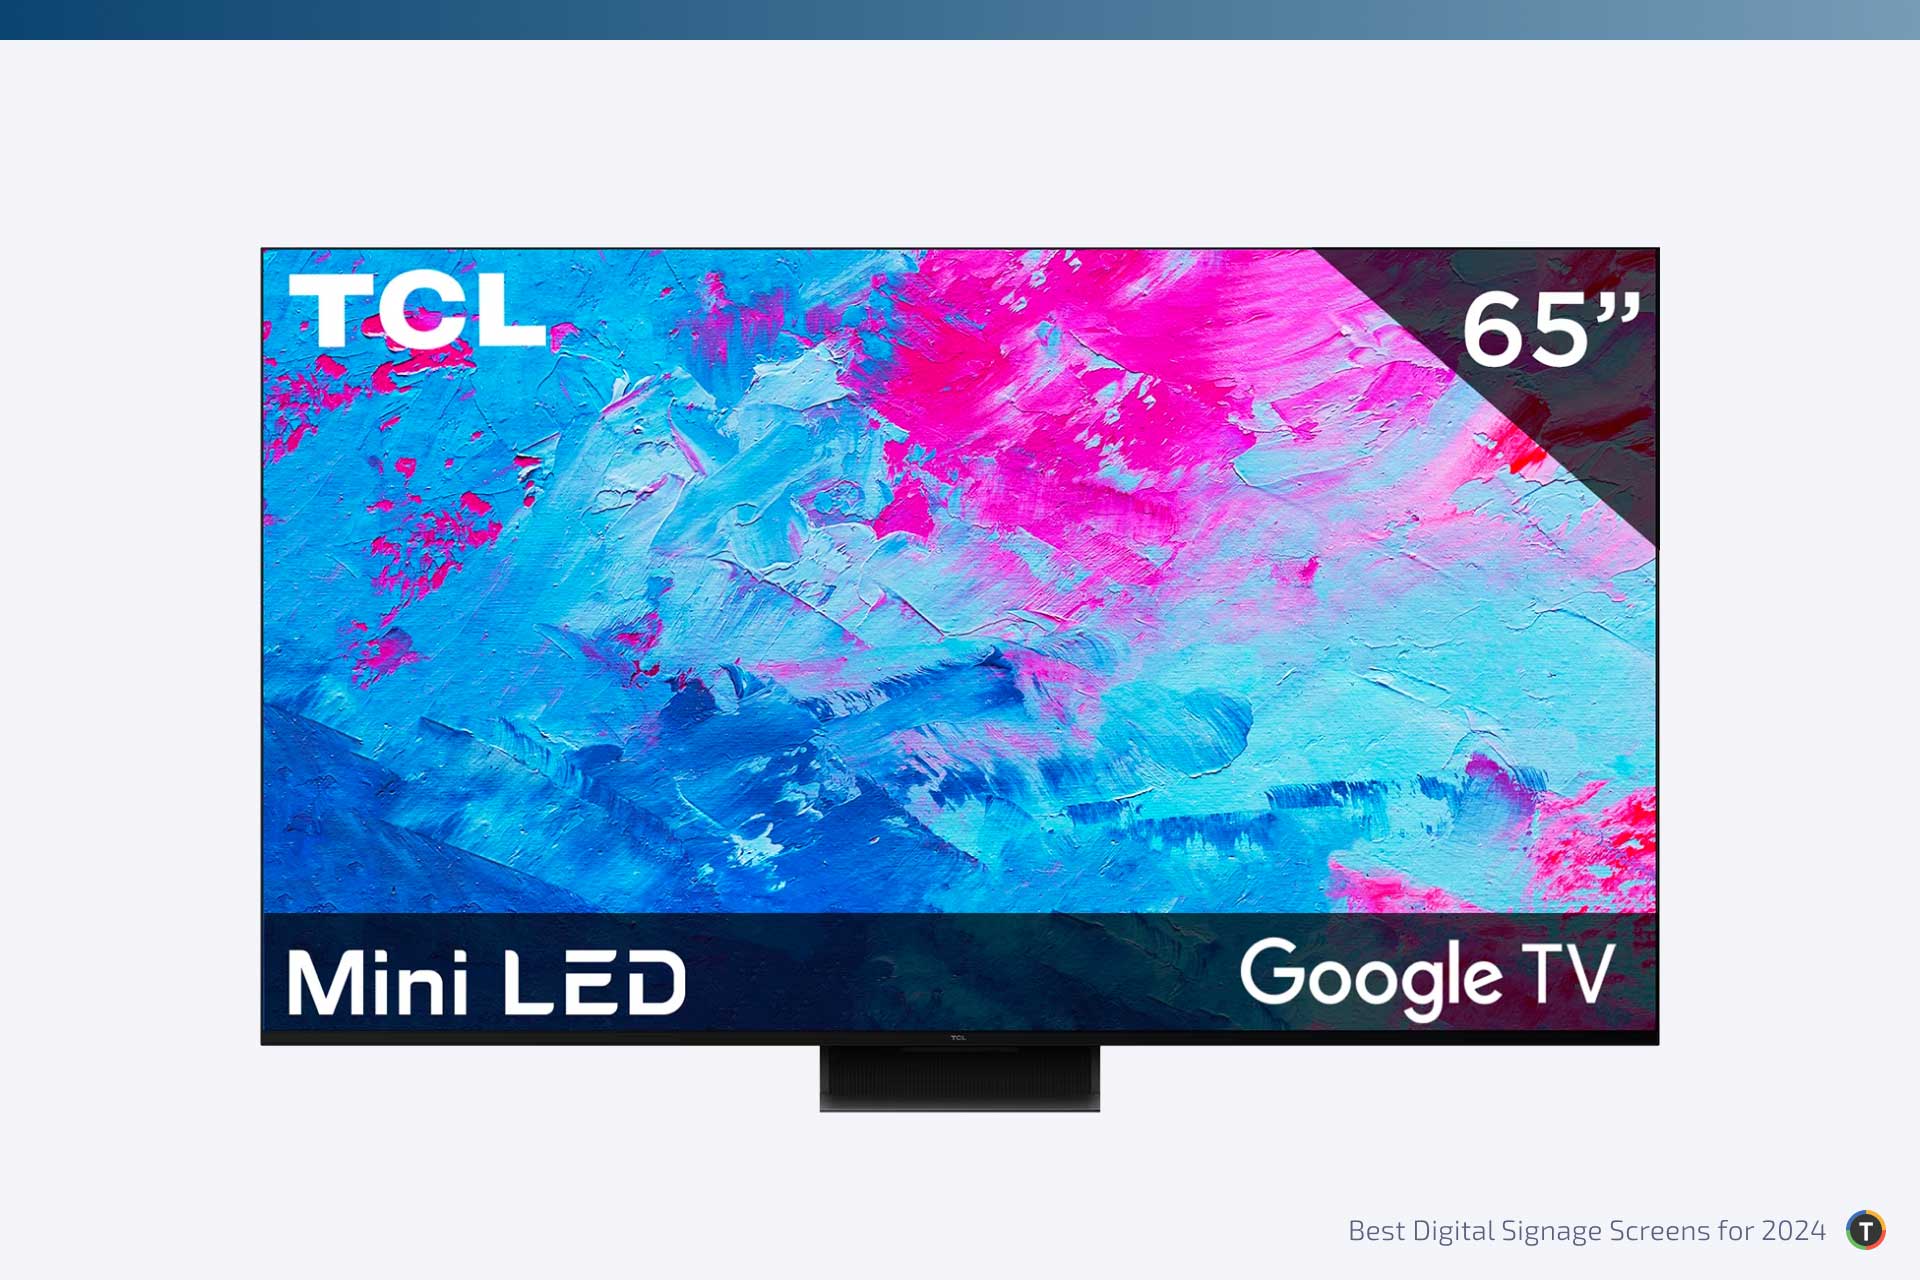 TCL TVs for Digital Signage